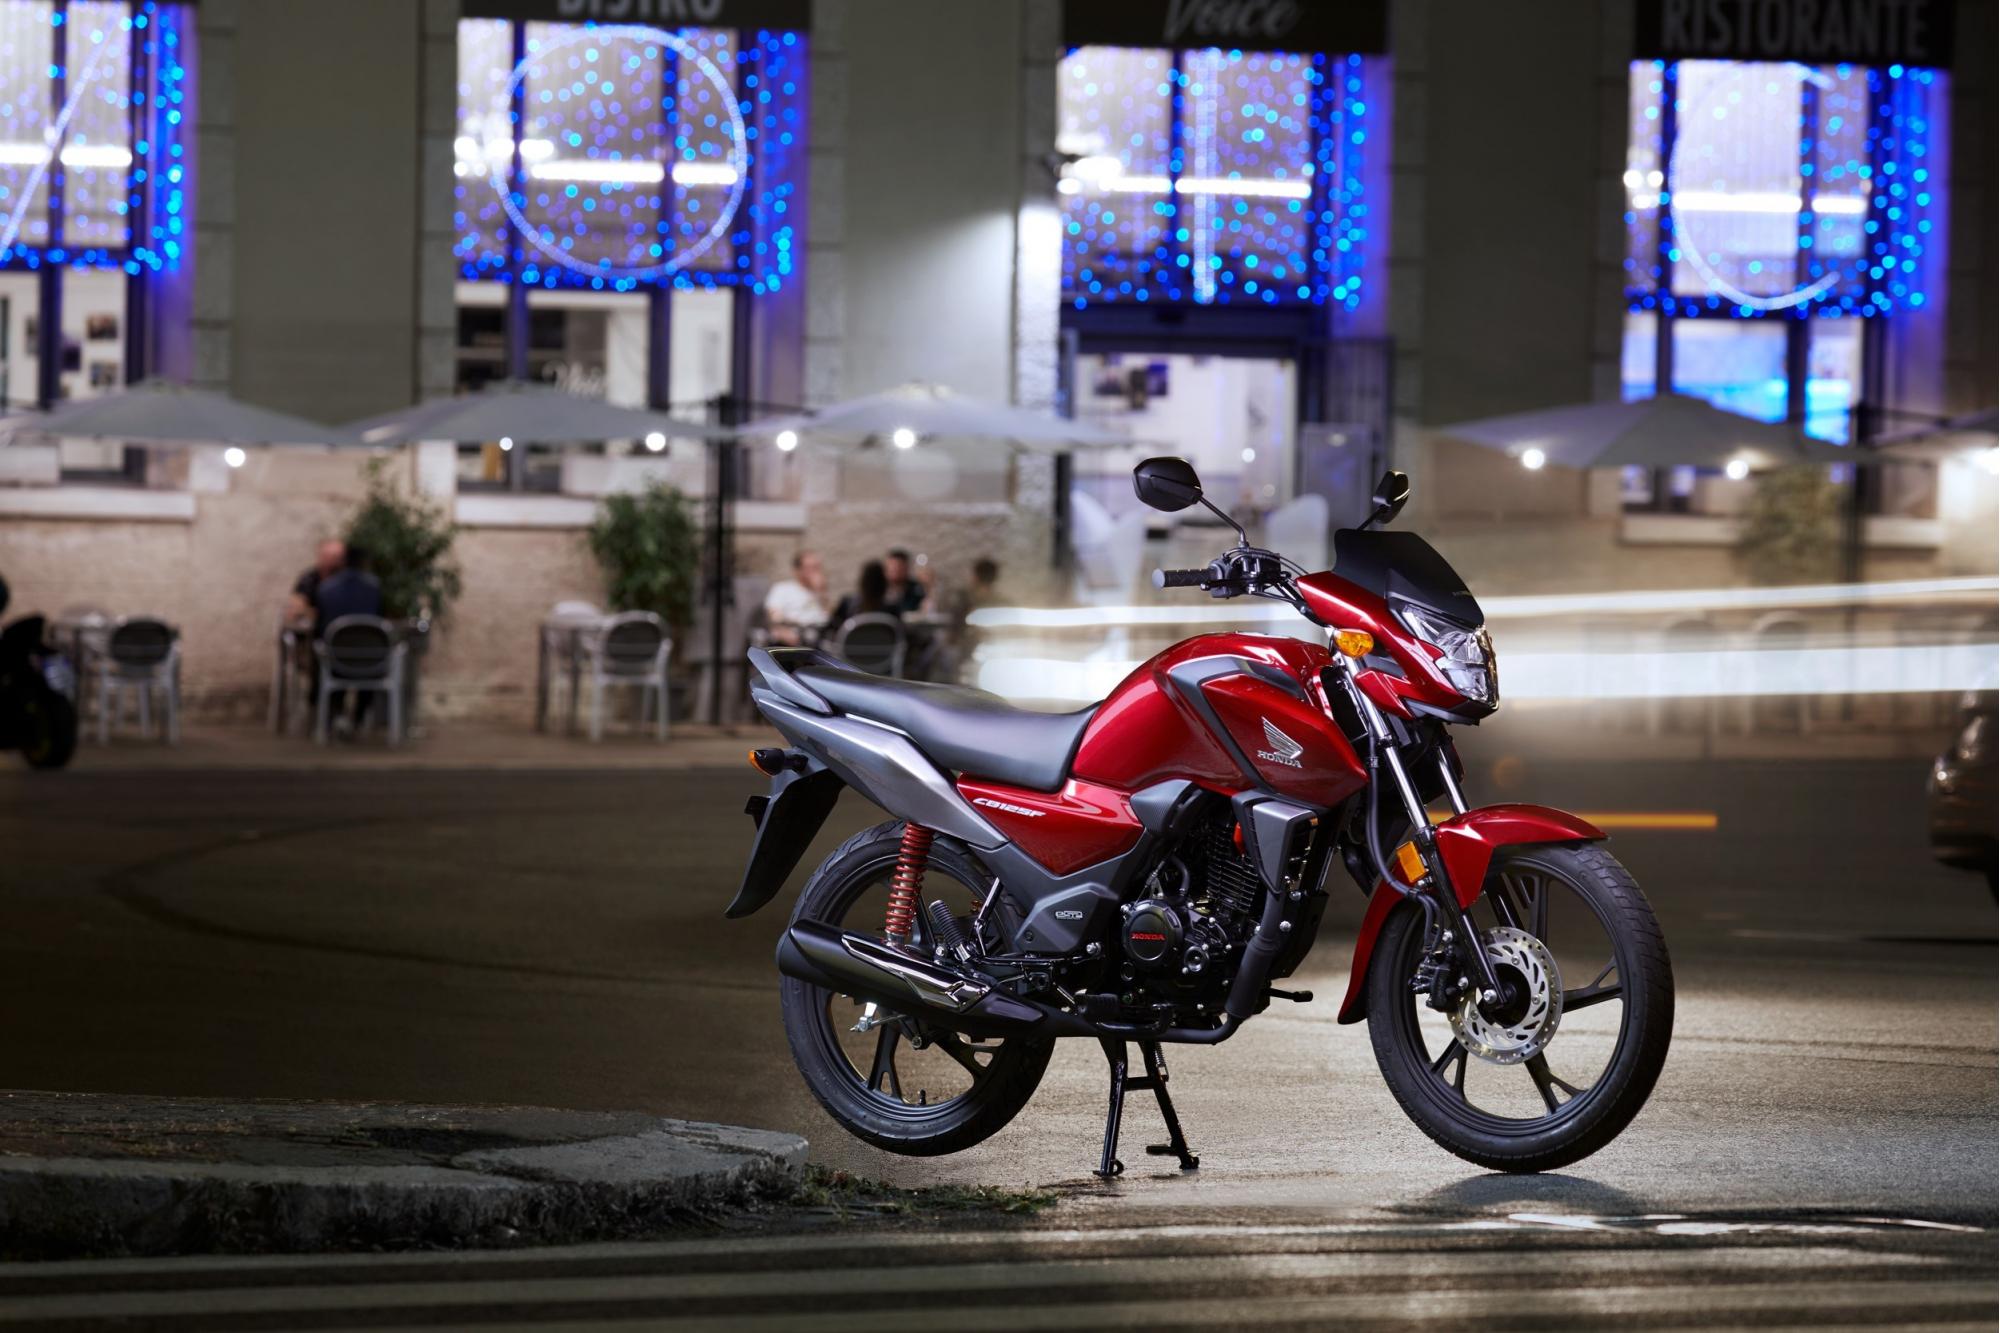 Η νέα Honda CB125F 21ΜΥ έρχεται τον Ιανουάριο 2021 στην Ελλάδα